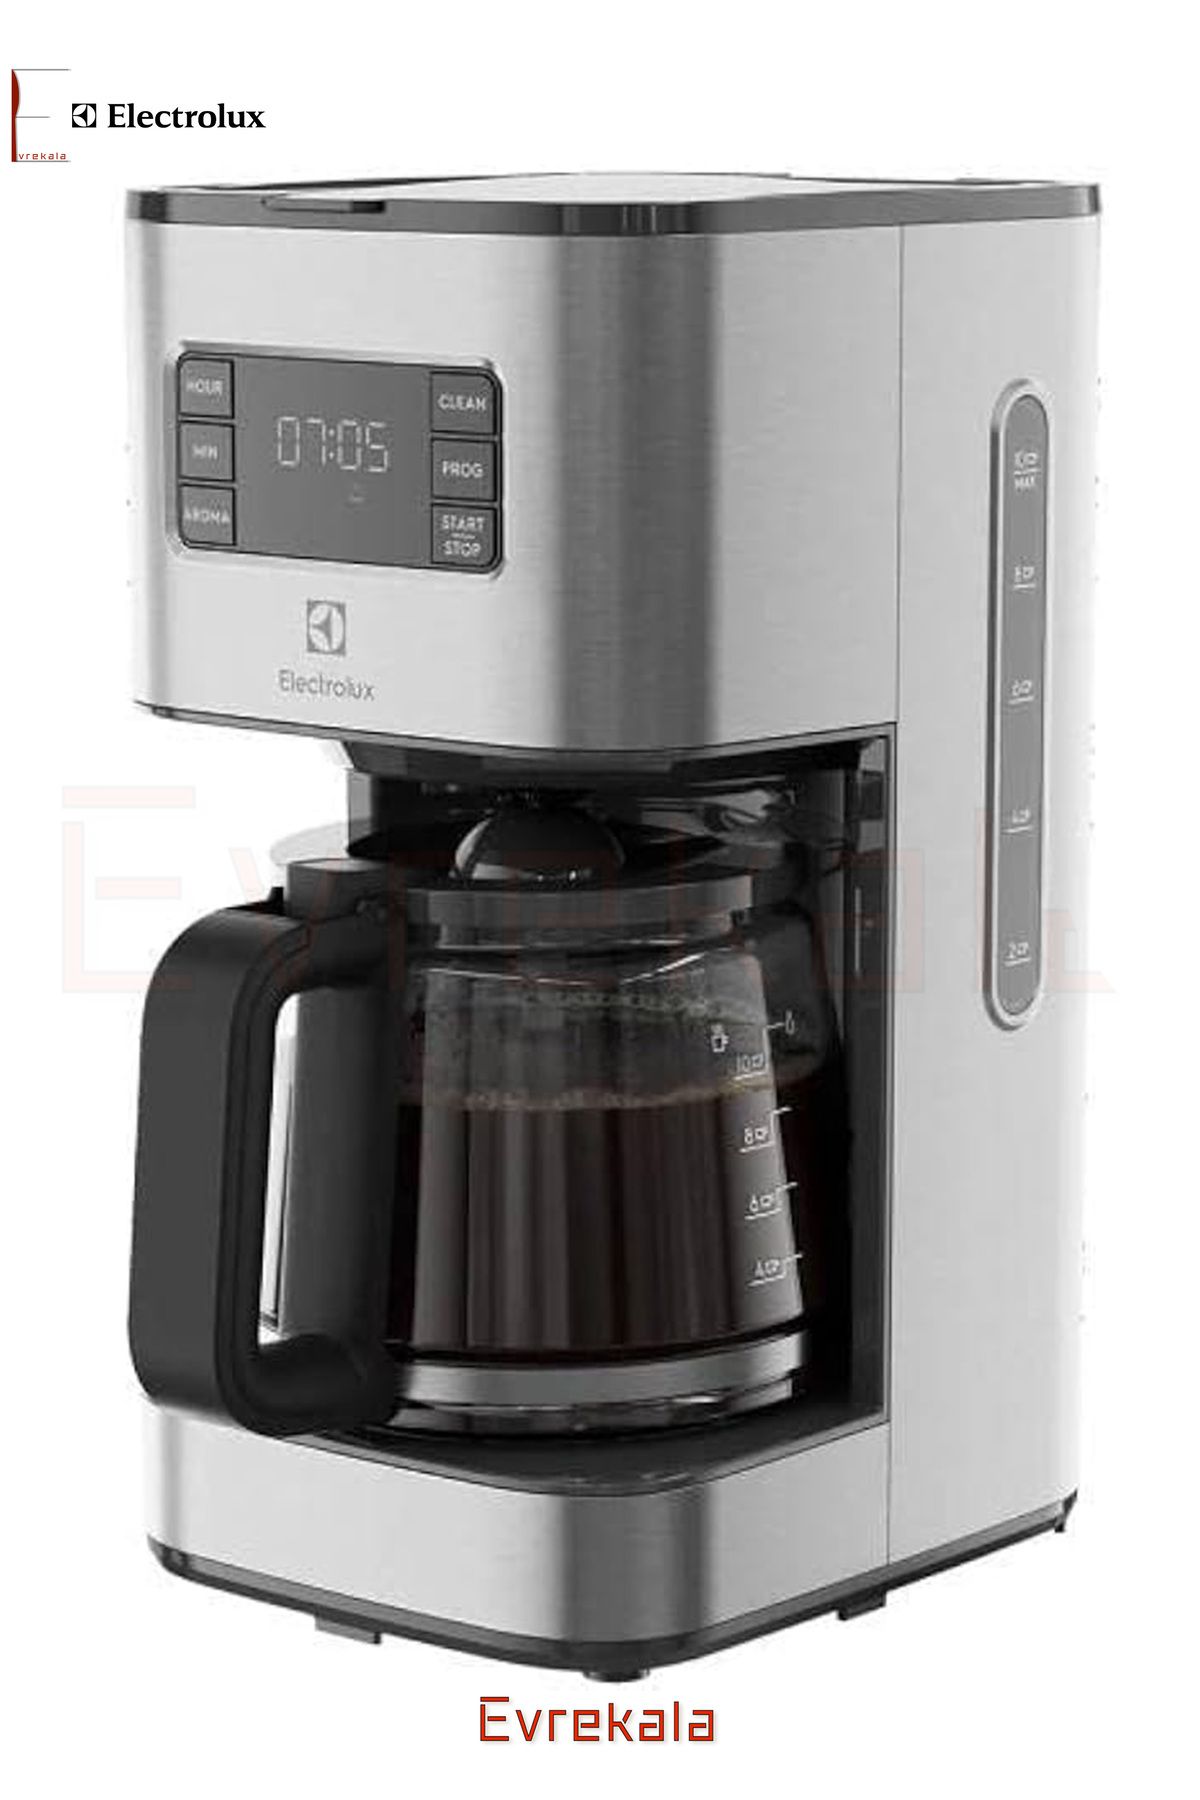 Electrolux Evrekala Shop Filtre Kahve Makinesi Electrolux 5 Zaman Ayarlı Temizlenebilir Filtreli Yeni Seri